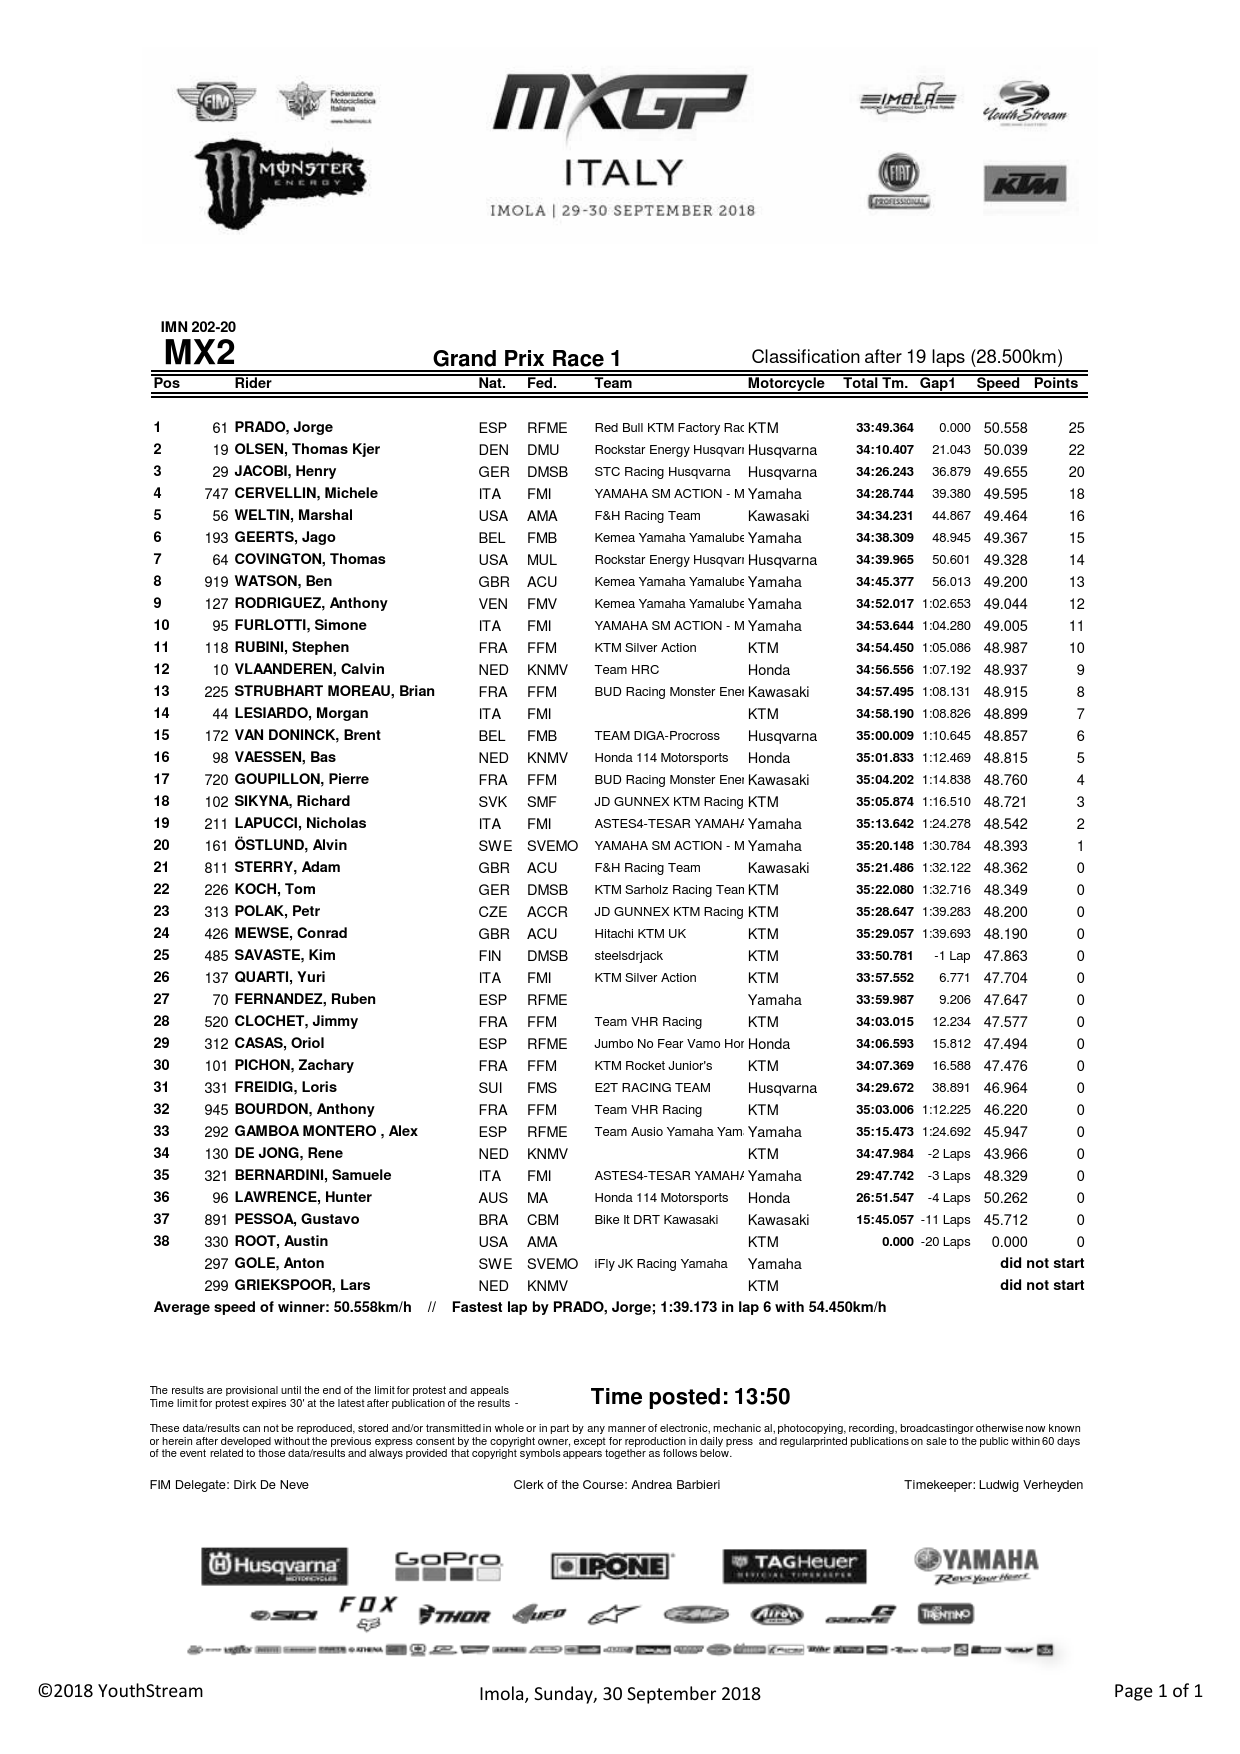 Результаты первой гонки Гран-При Италии MX2, Имола